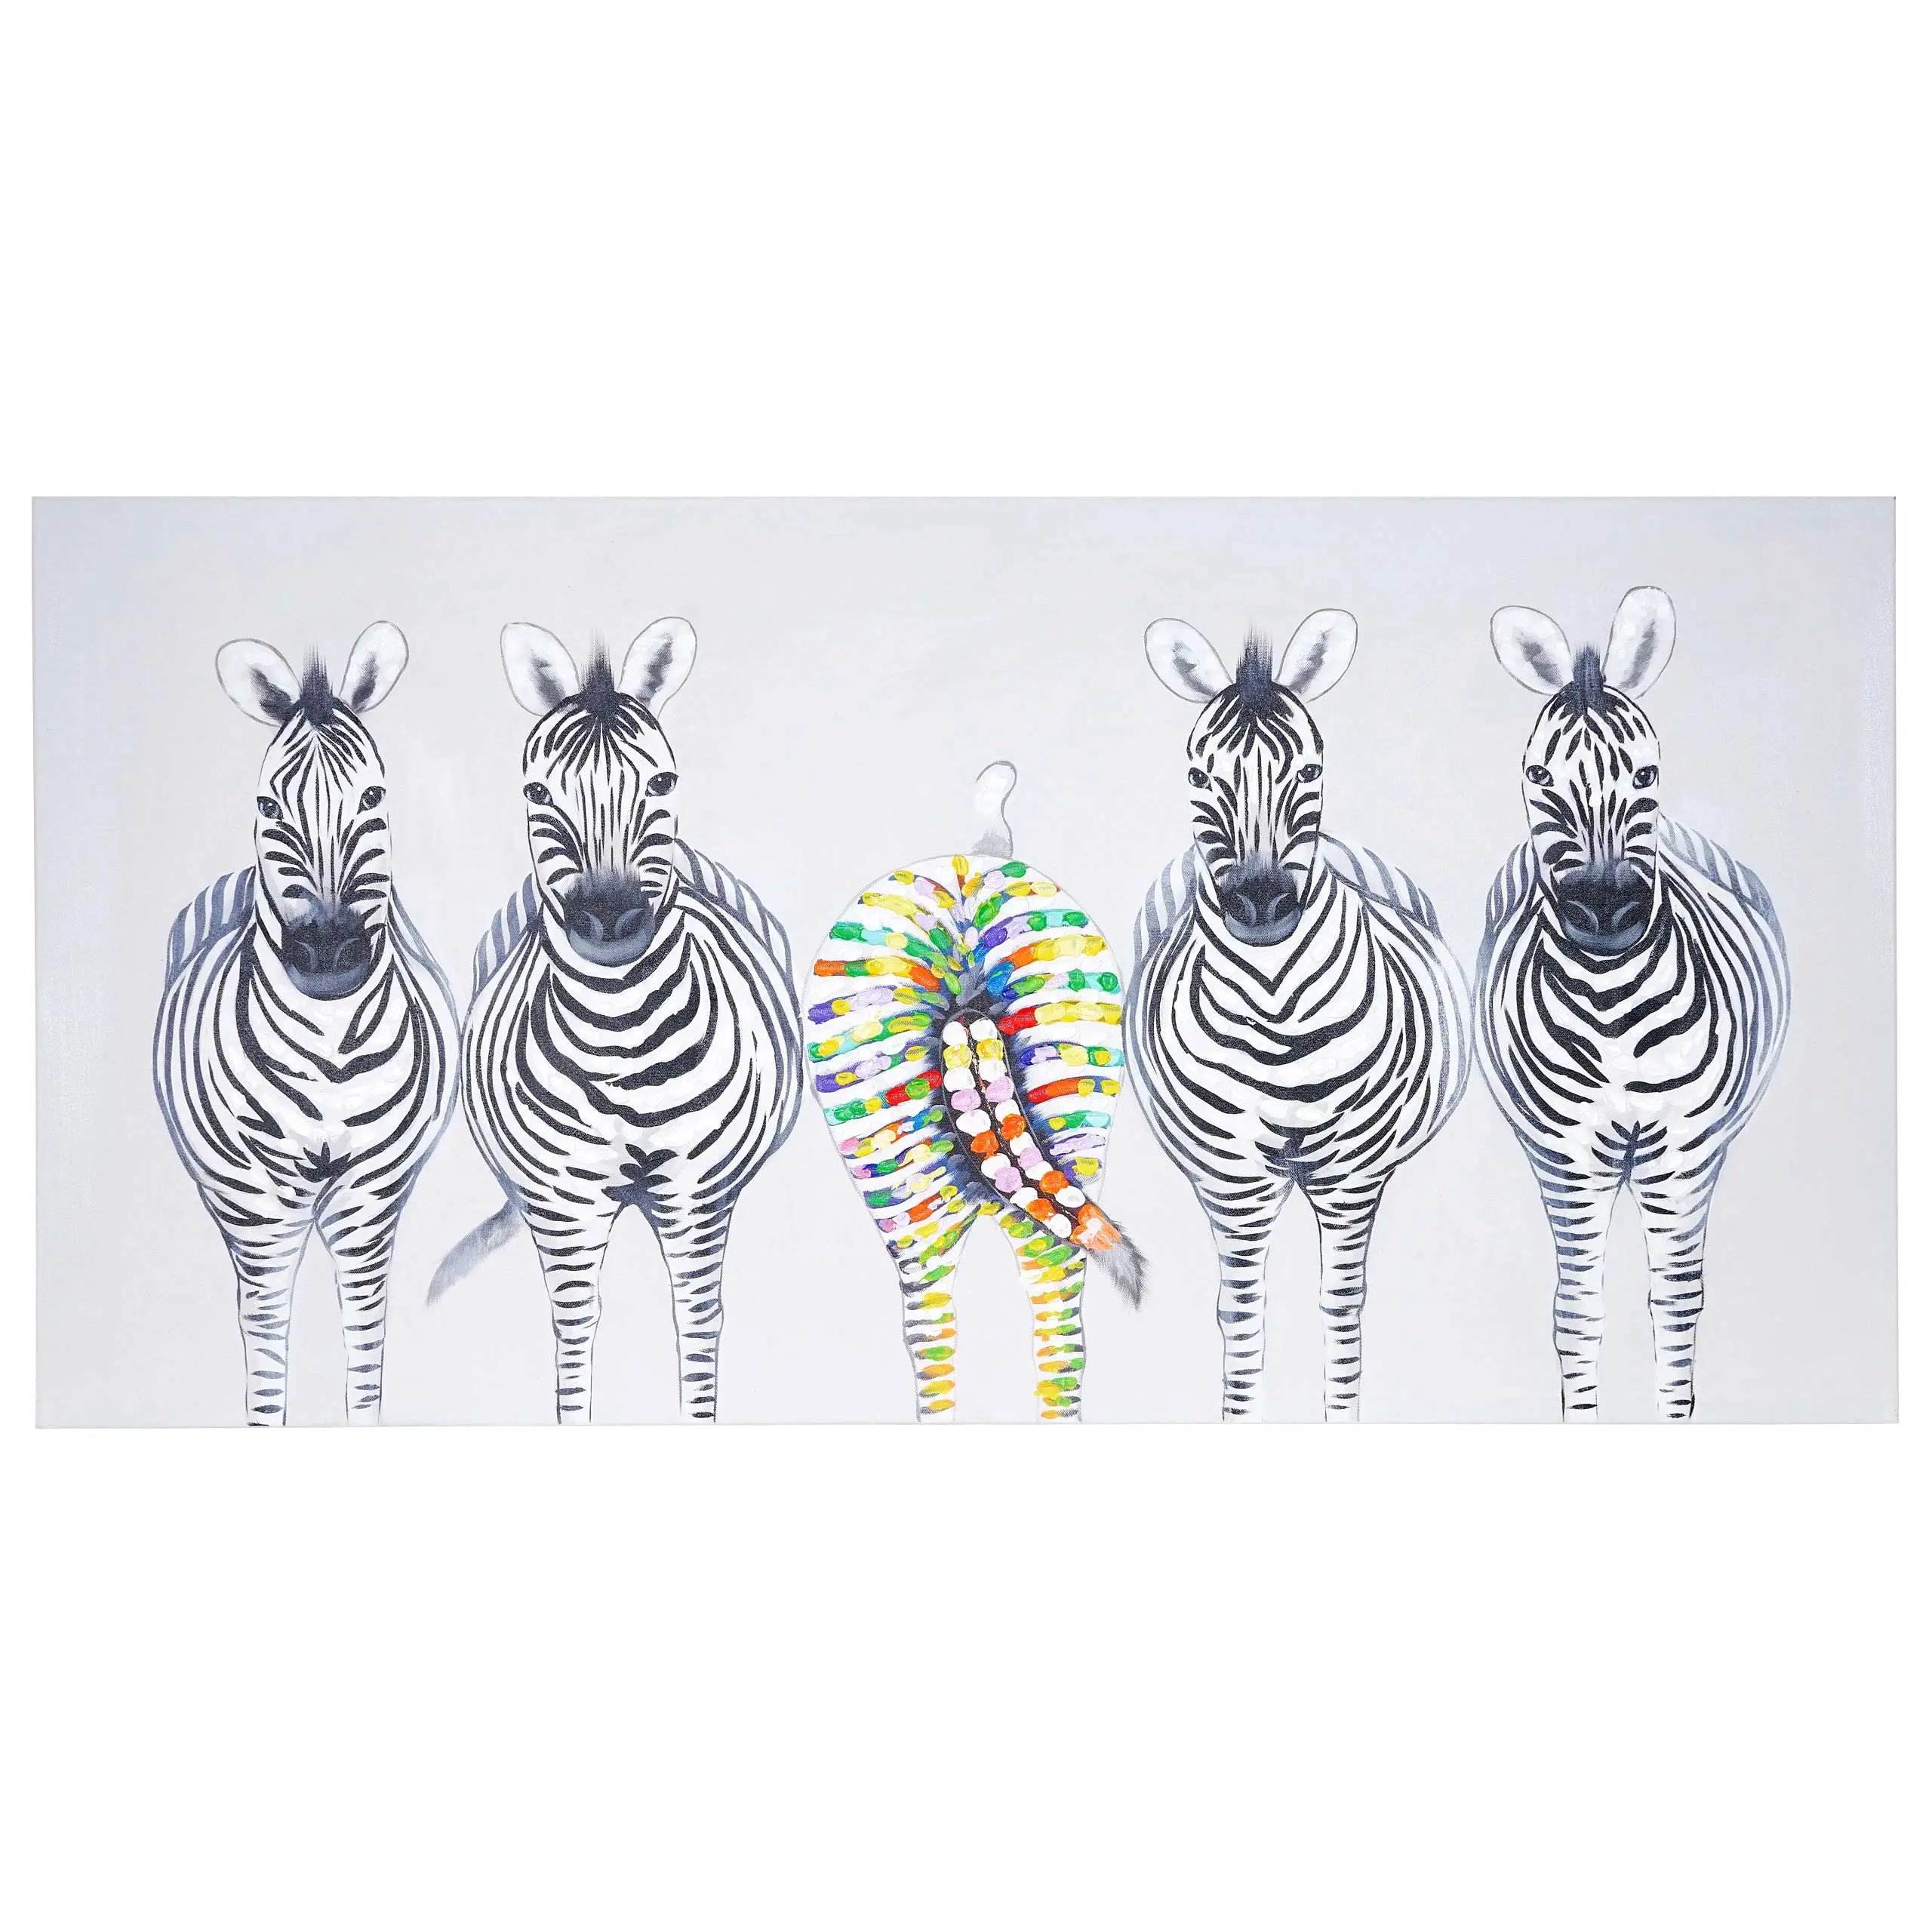 II handgemalt Zebras 脰lgem盲lde